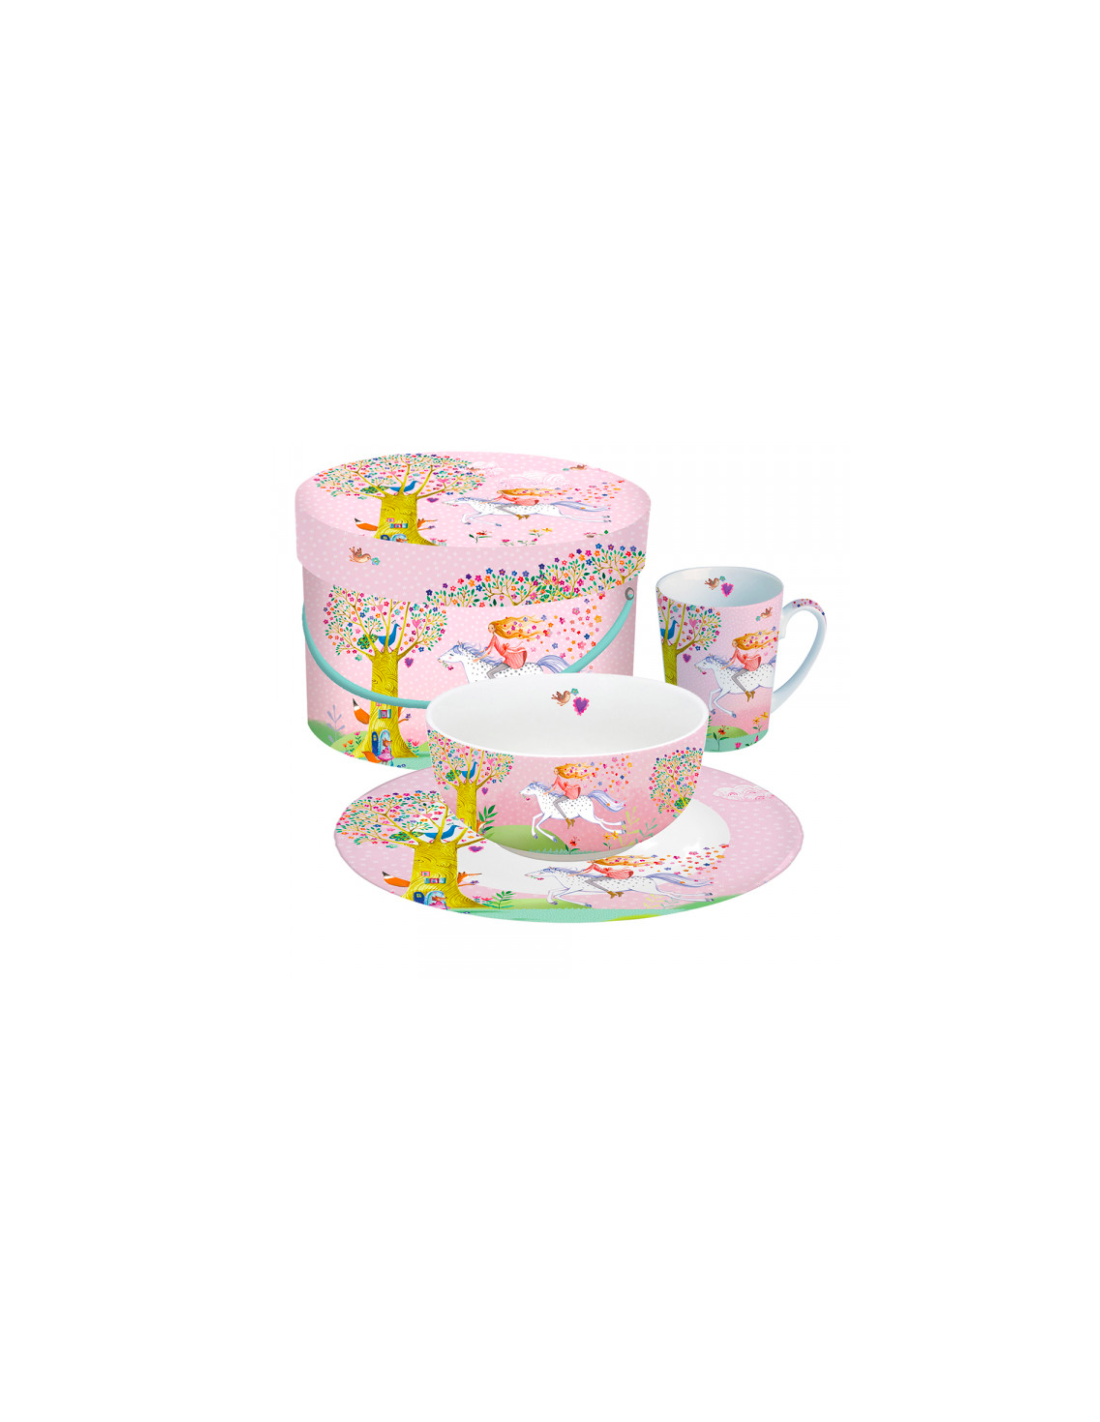 Lotto stock 2 tazze mug colazione ceramica da collezione bambini bimbo  bimba